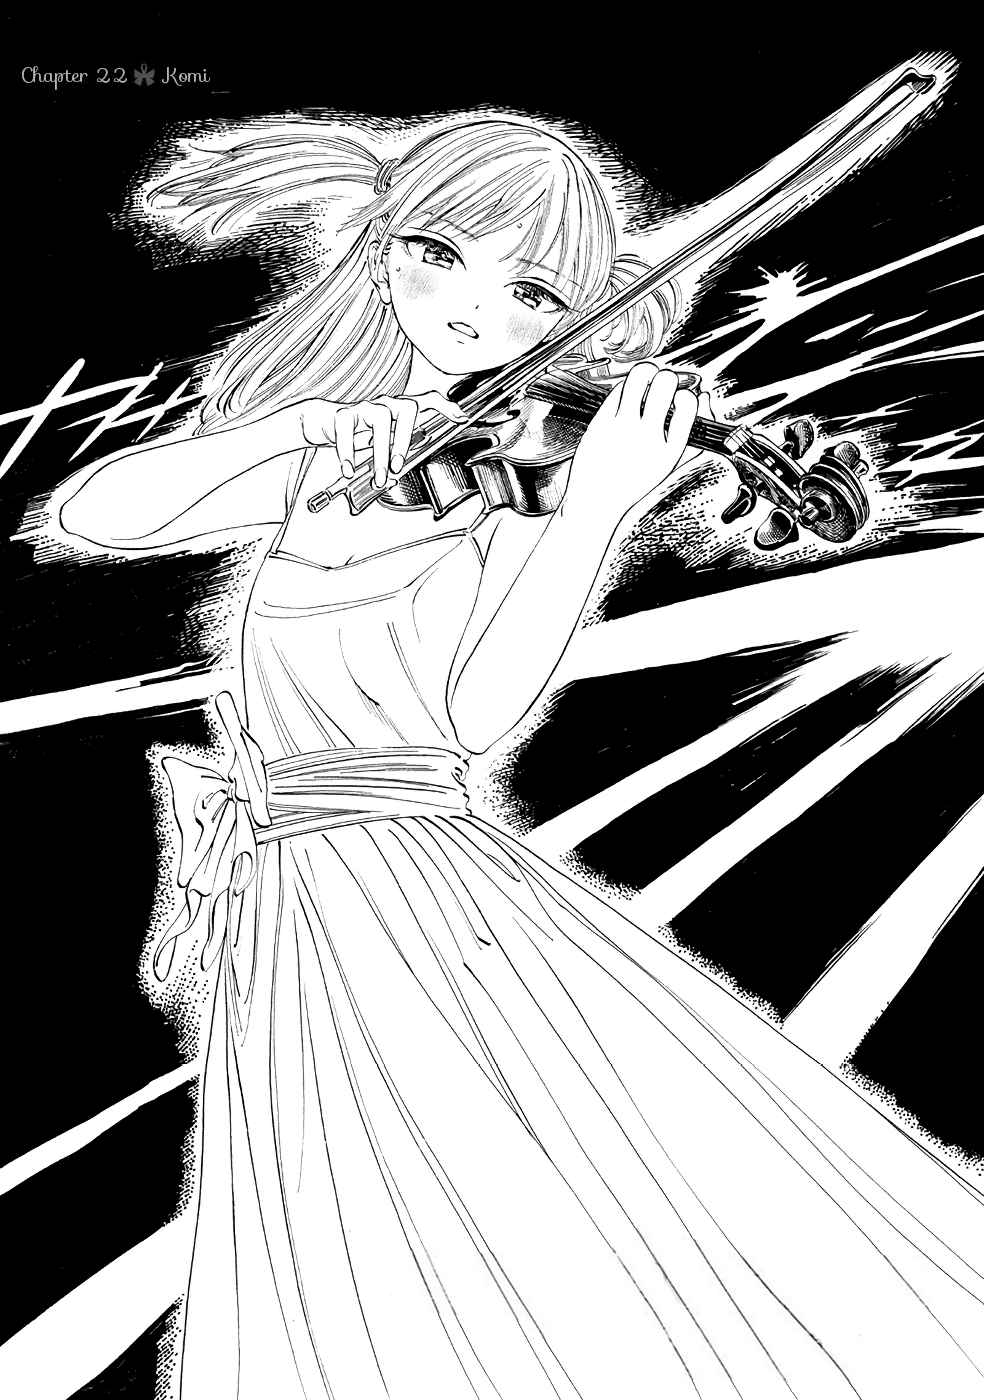 Akebi chan no Sailor Fuku Vol. 4 Ch. 22 Komi